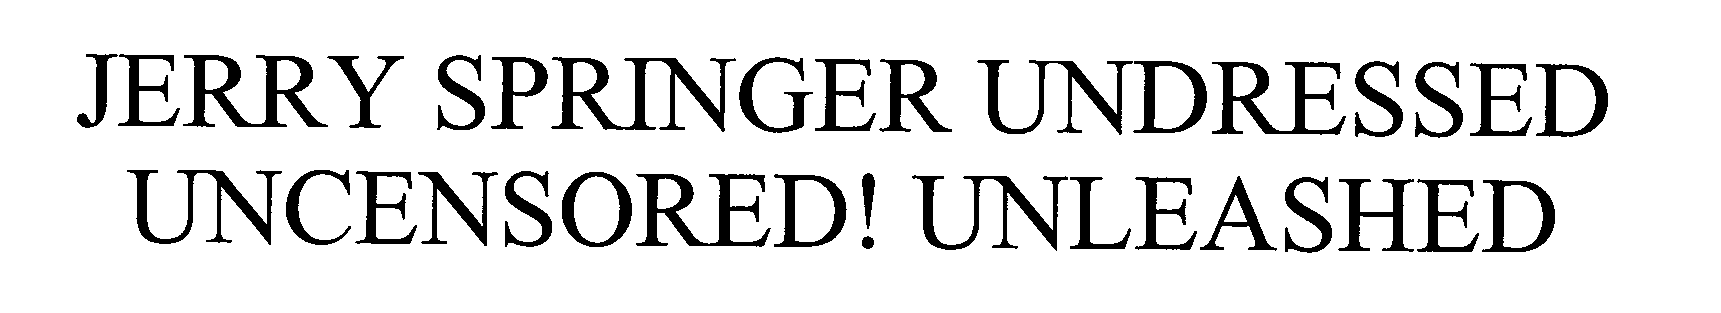  JERRY SPRINGER UNDRESSED UNCENSORED! UNLEASHED